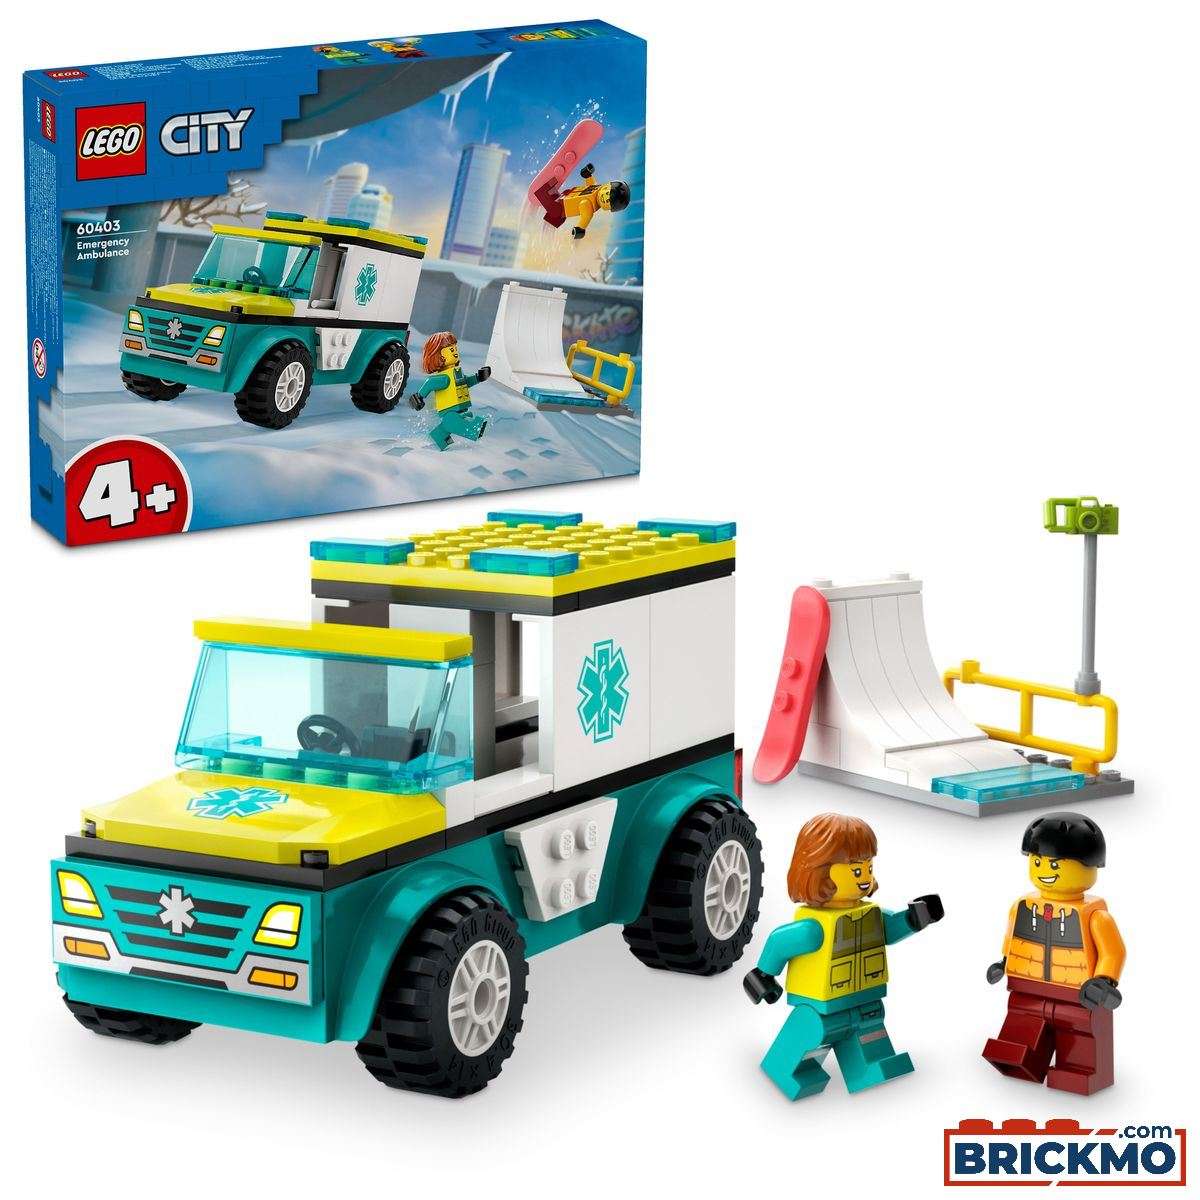 LEGO City 60403 Ambulance og snowboarder 60403